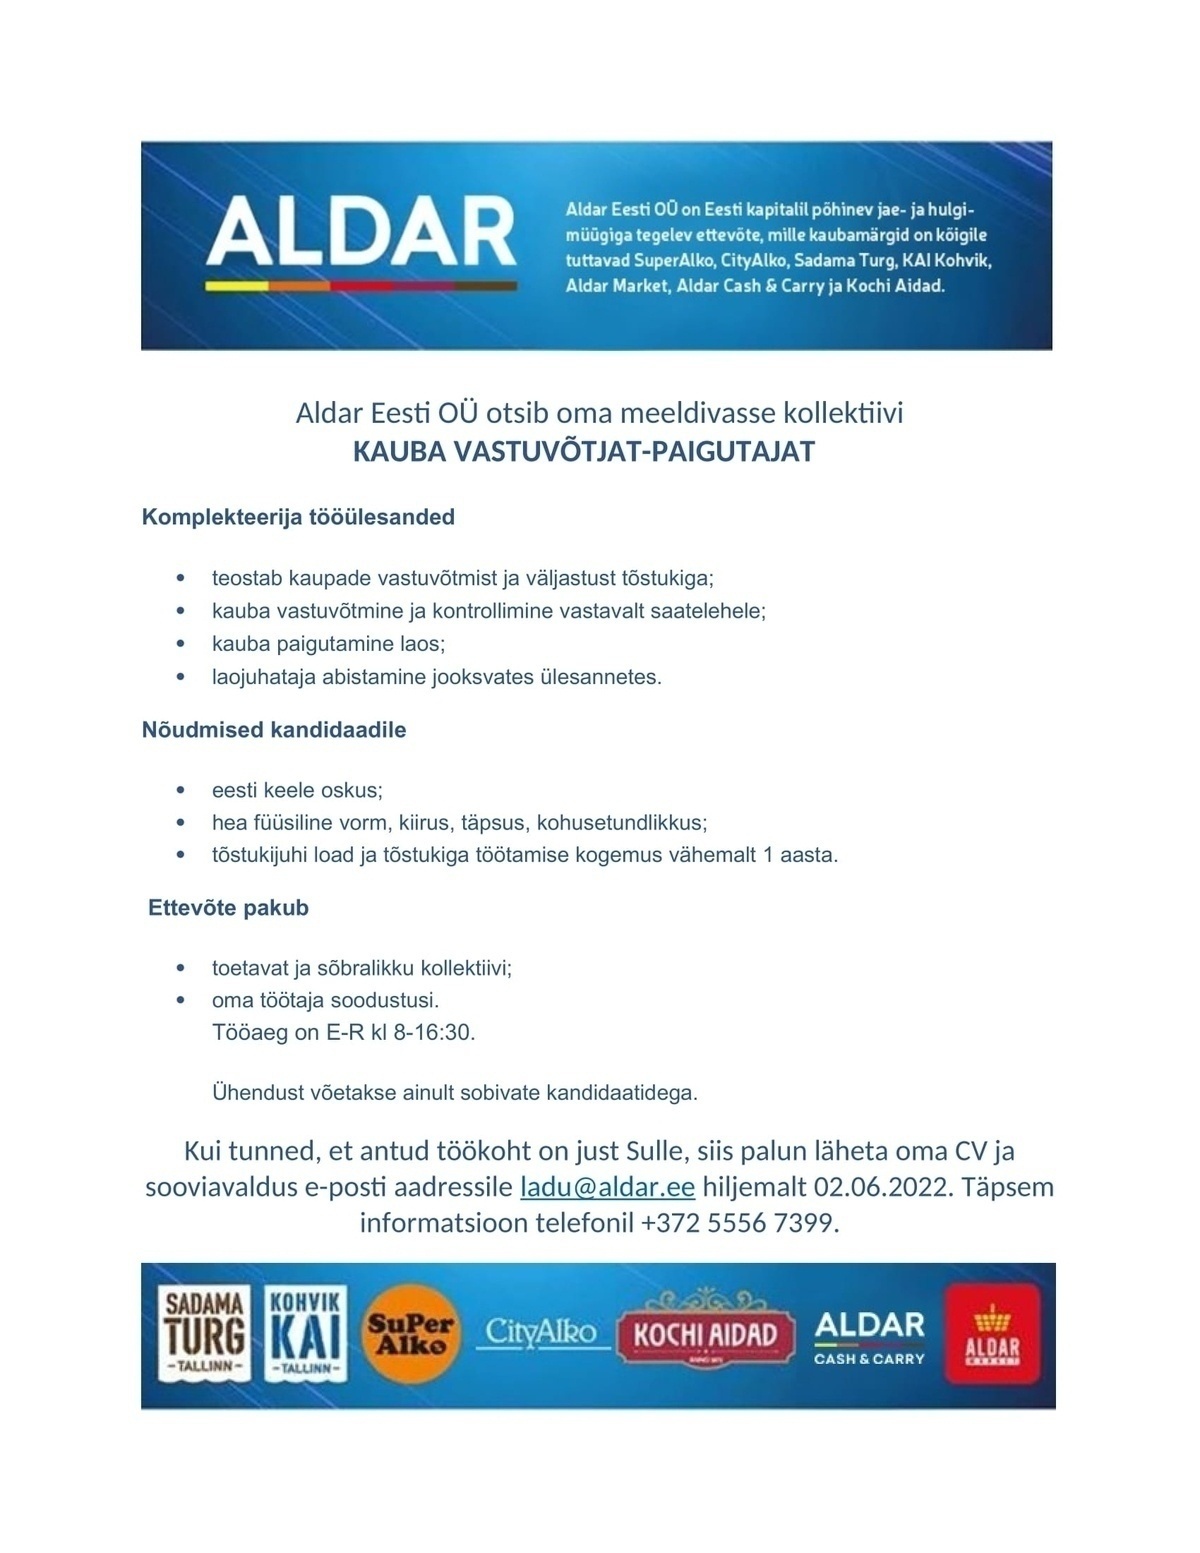 Aldar Eesti OÜ Kauba vastuvõtja-paigutaja-C&C Aldar